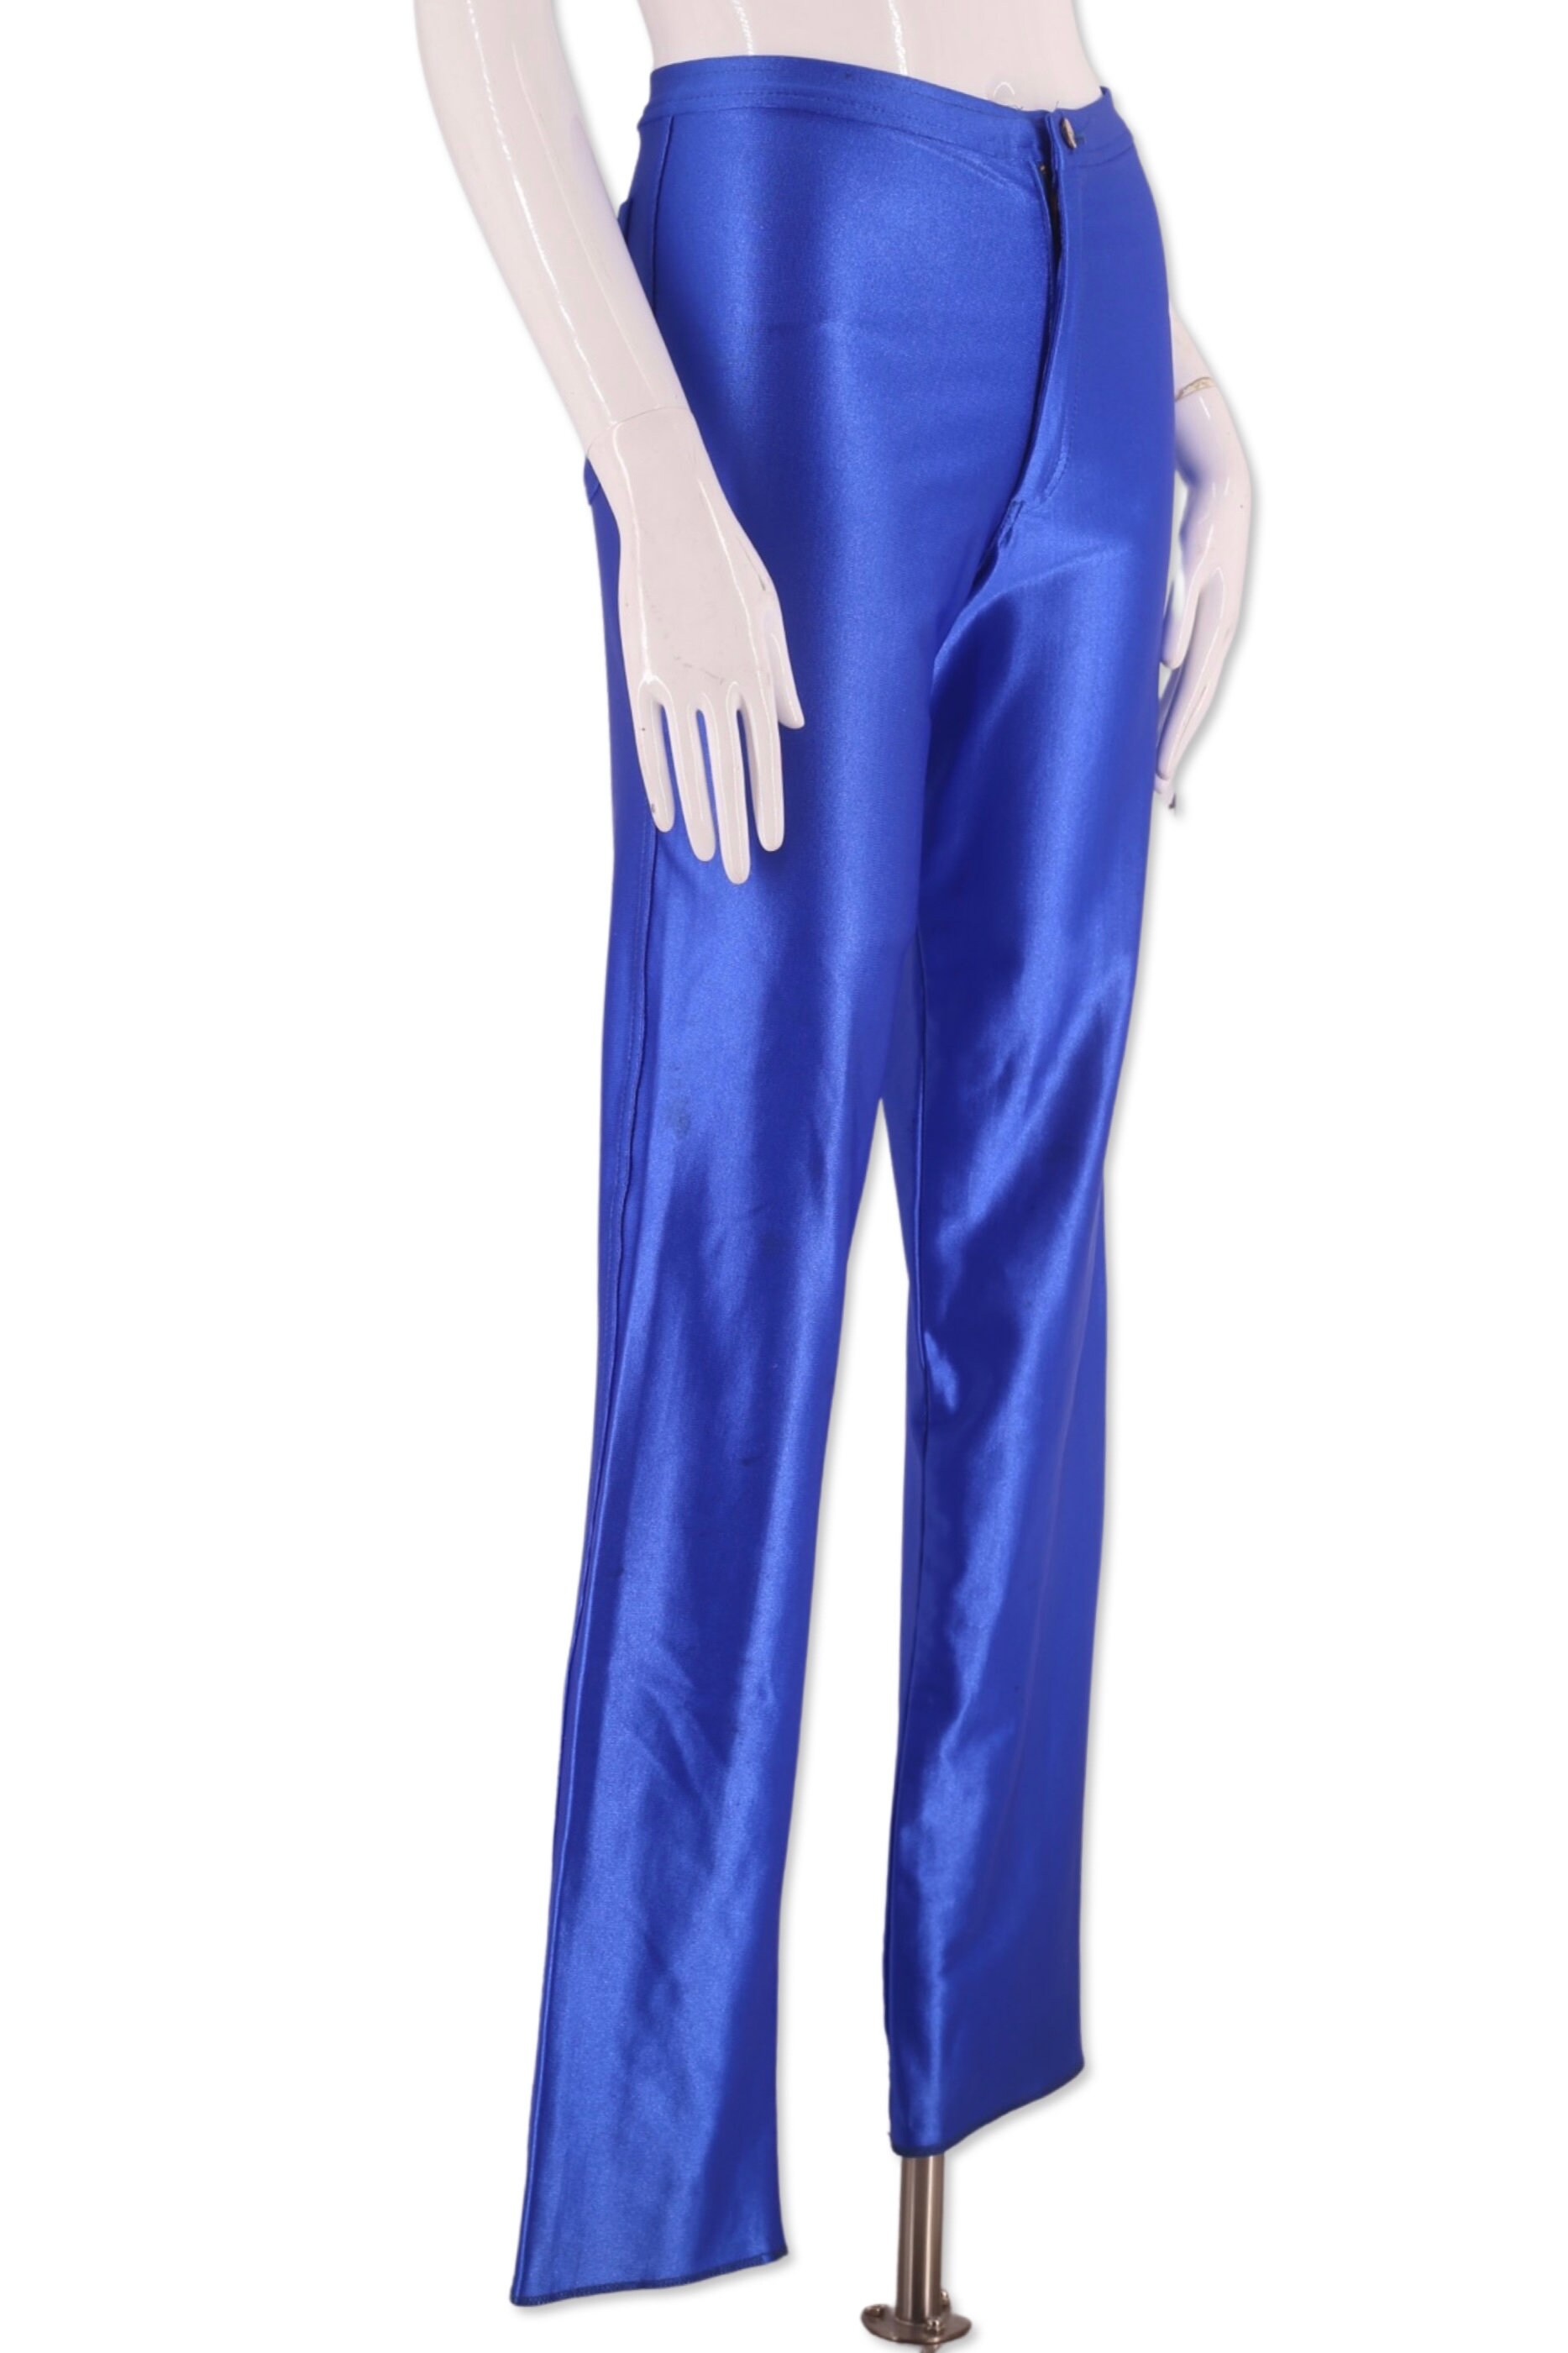 70s blue disco pants S, vintage 1970s original spandex Michi